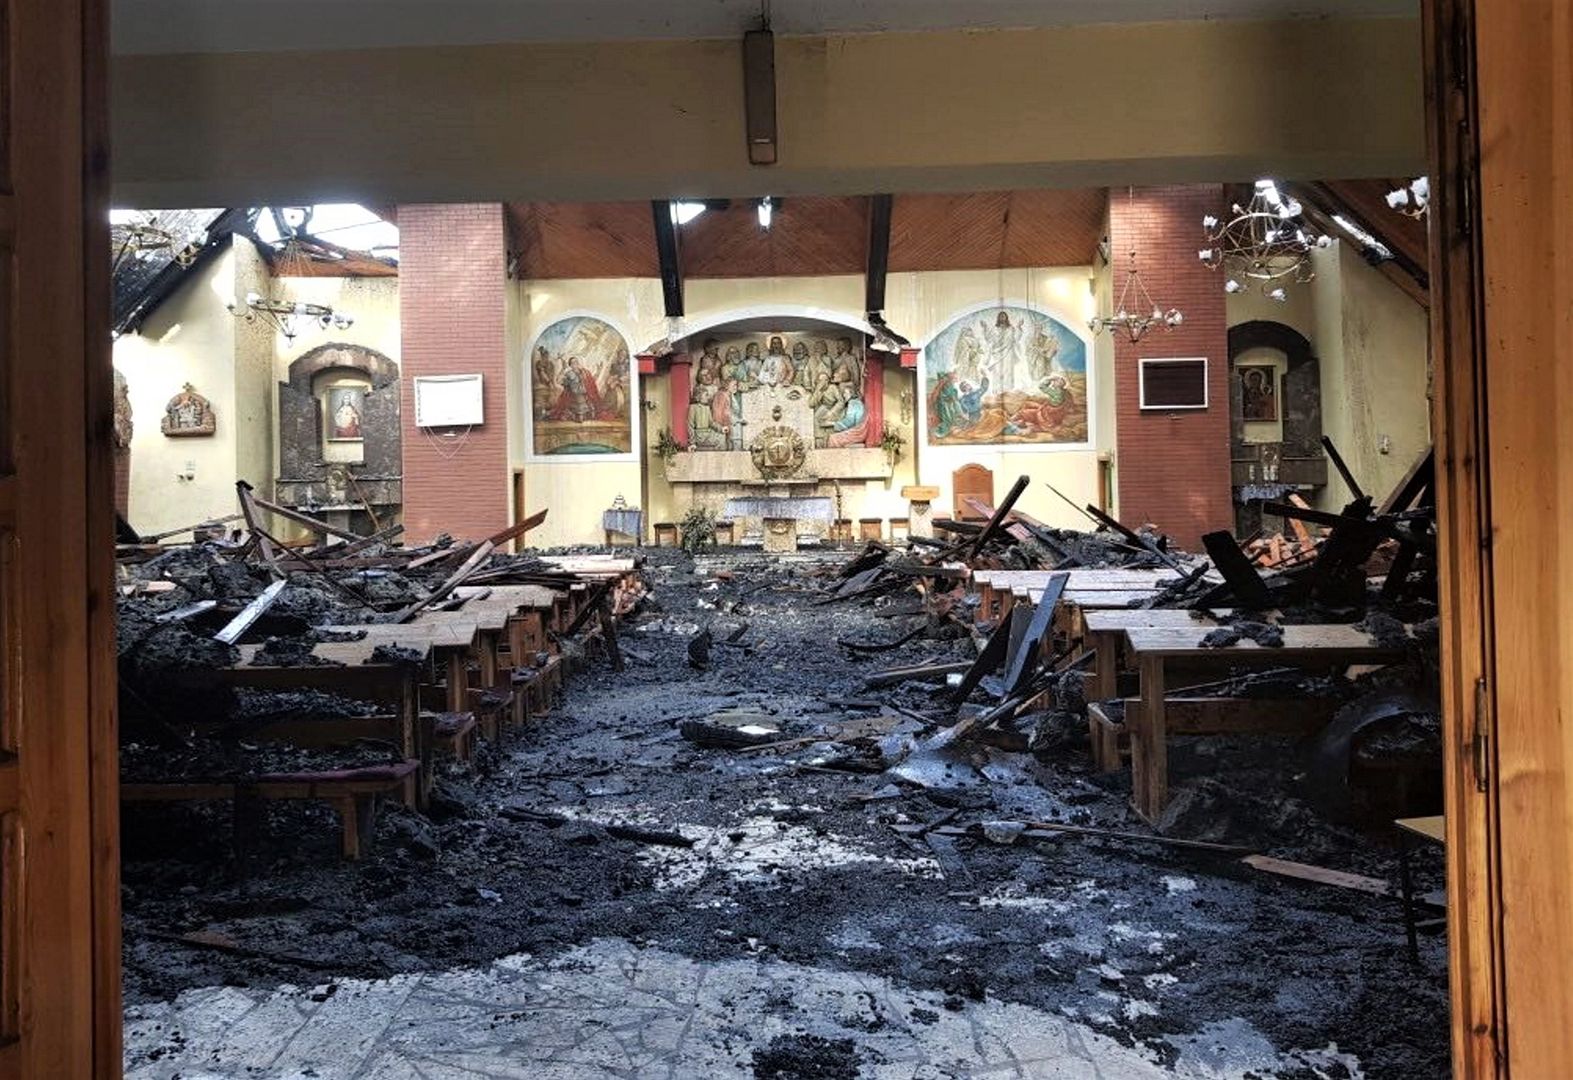 Parafia opublikowała zdjęcia po pożarze. "Liczę na hojność i wsparcie"